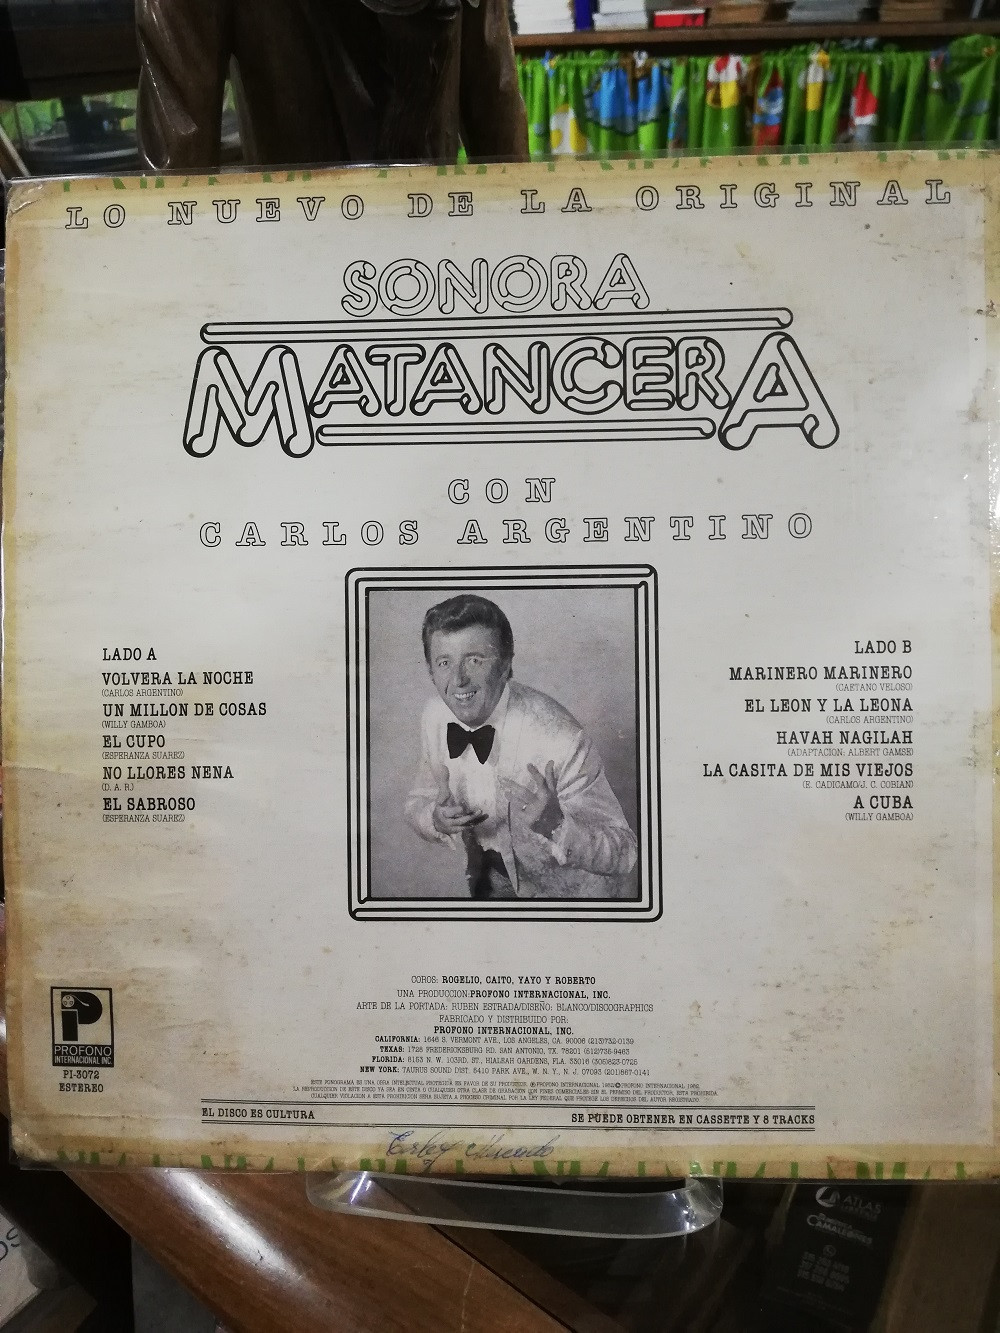 Imagen LP SONORA MATANCERA - LO NUEVO DE LA SONORA MATANCERA CON CARLOS ARGENTINO 2